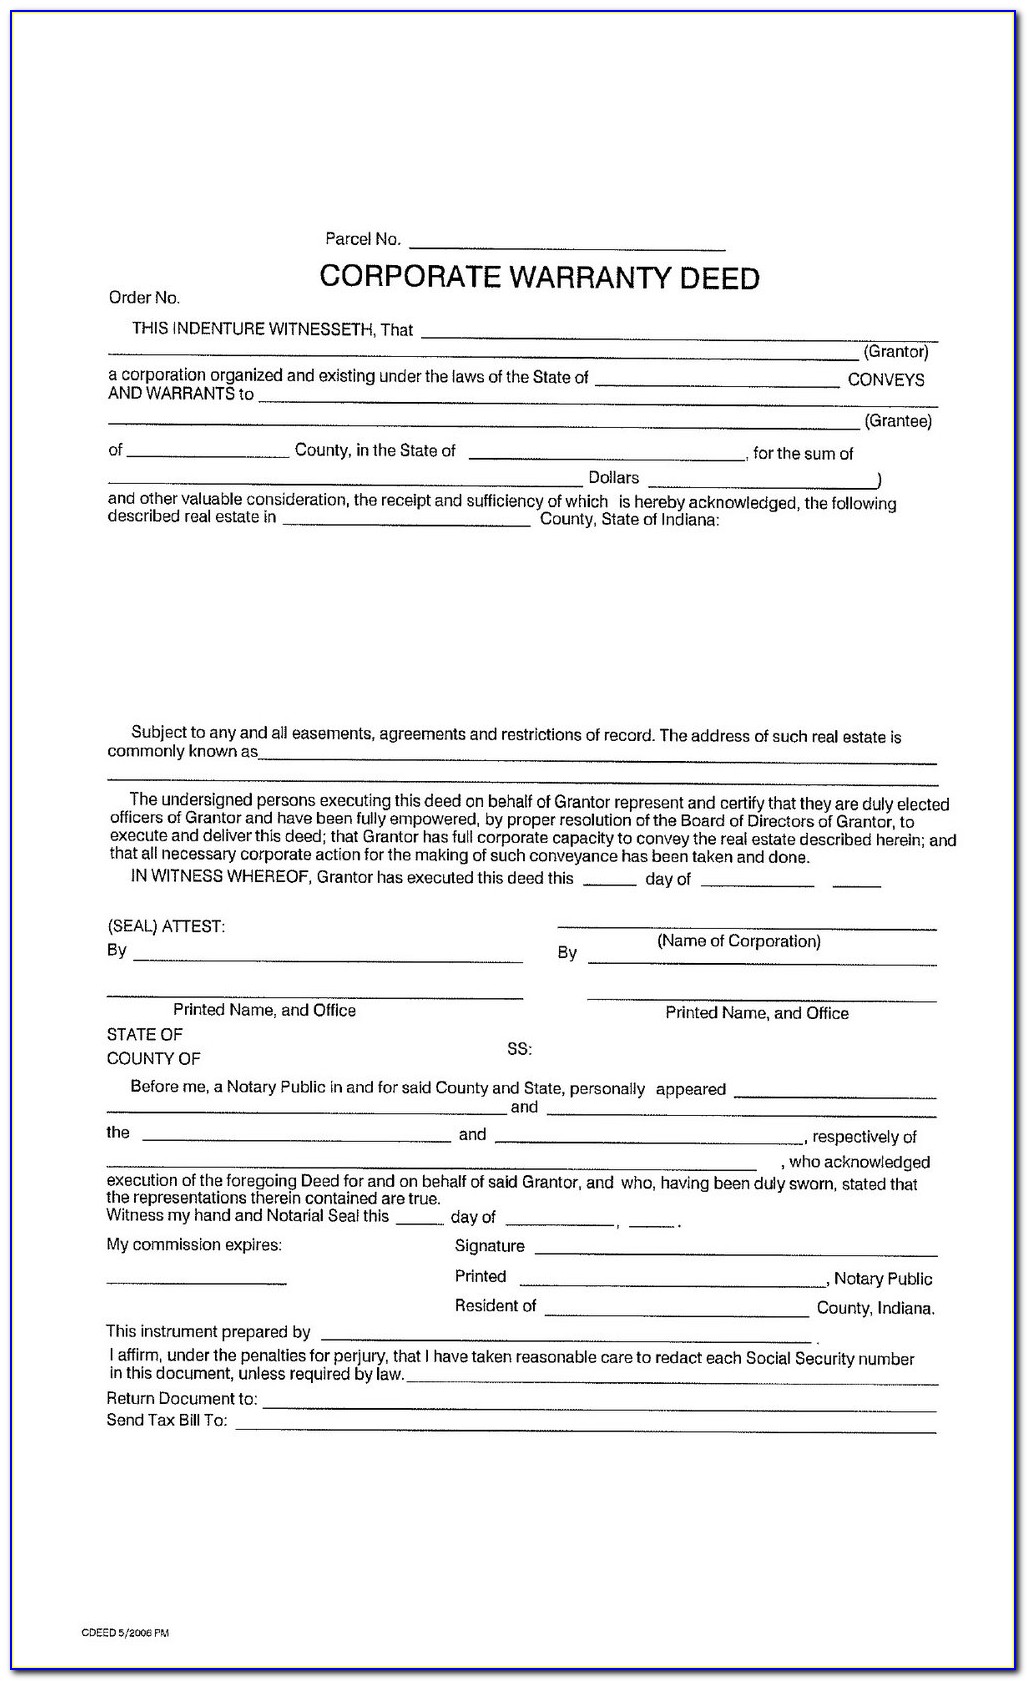 Iowa State Bar Association Warranty Deed Form